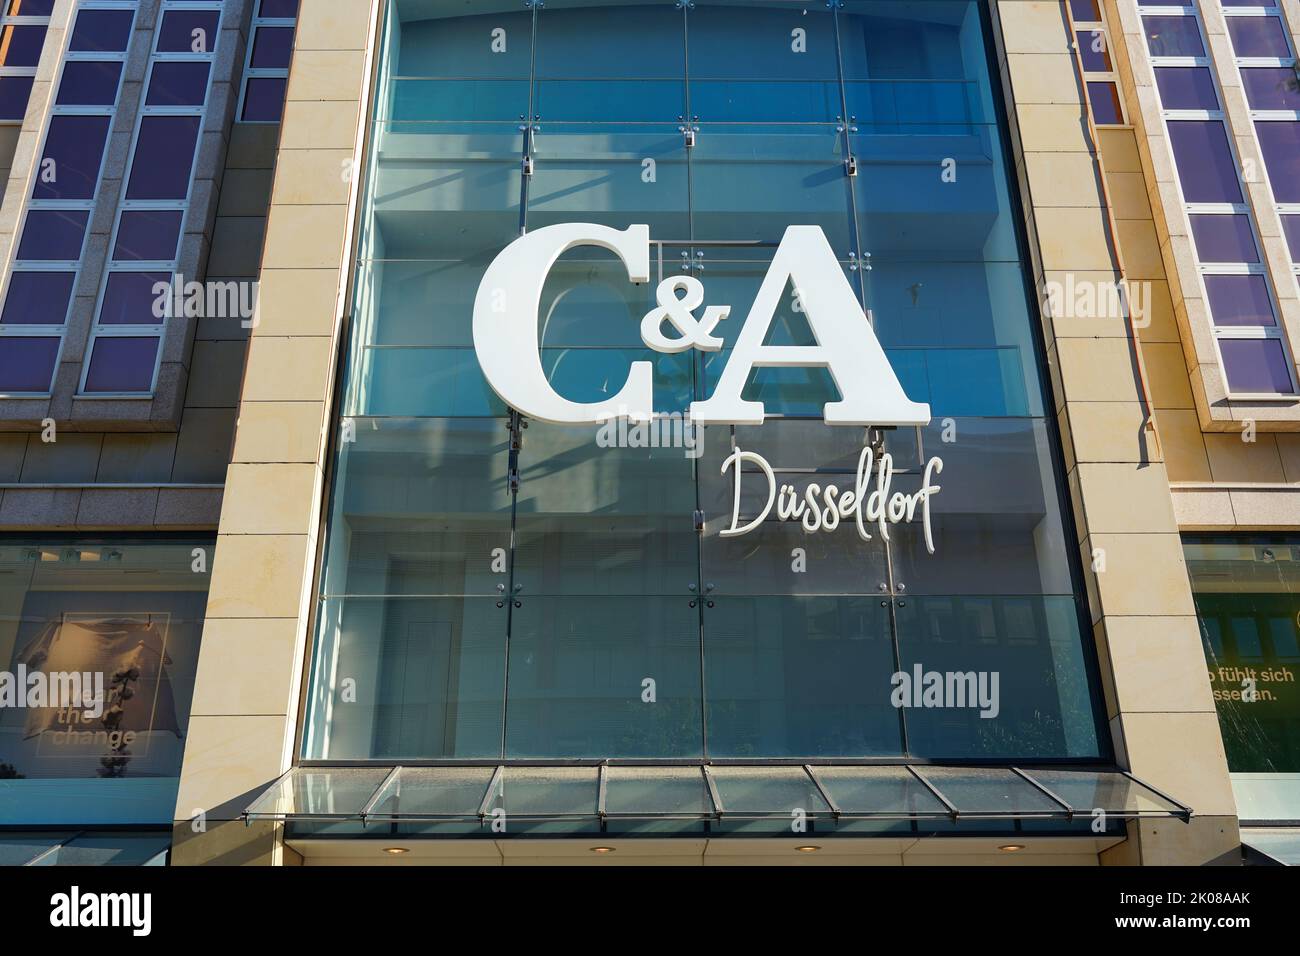 Logotipo de una tienda C&A Düsseldorf en la calle comercial Schadowstraße en Düsseldorf/Alemania. C&A es una popular cadena de tiendas minoristas de moda. Foto de stock